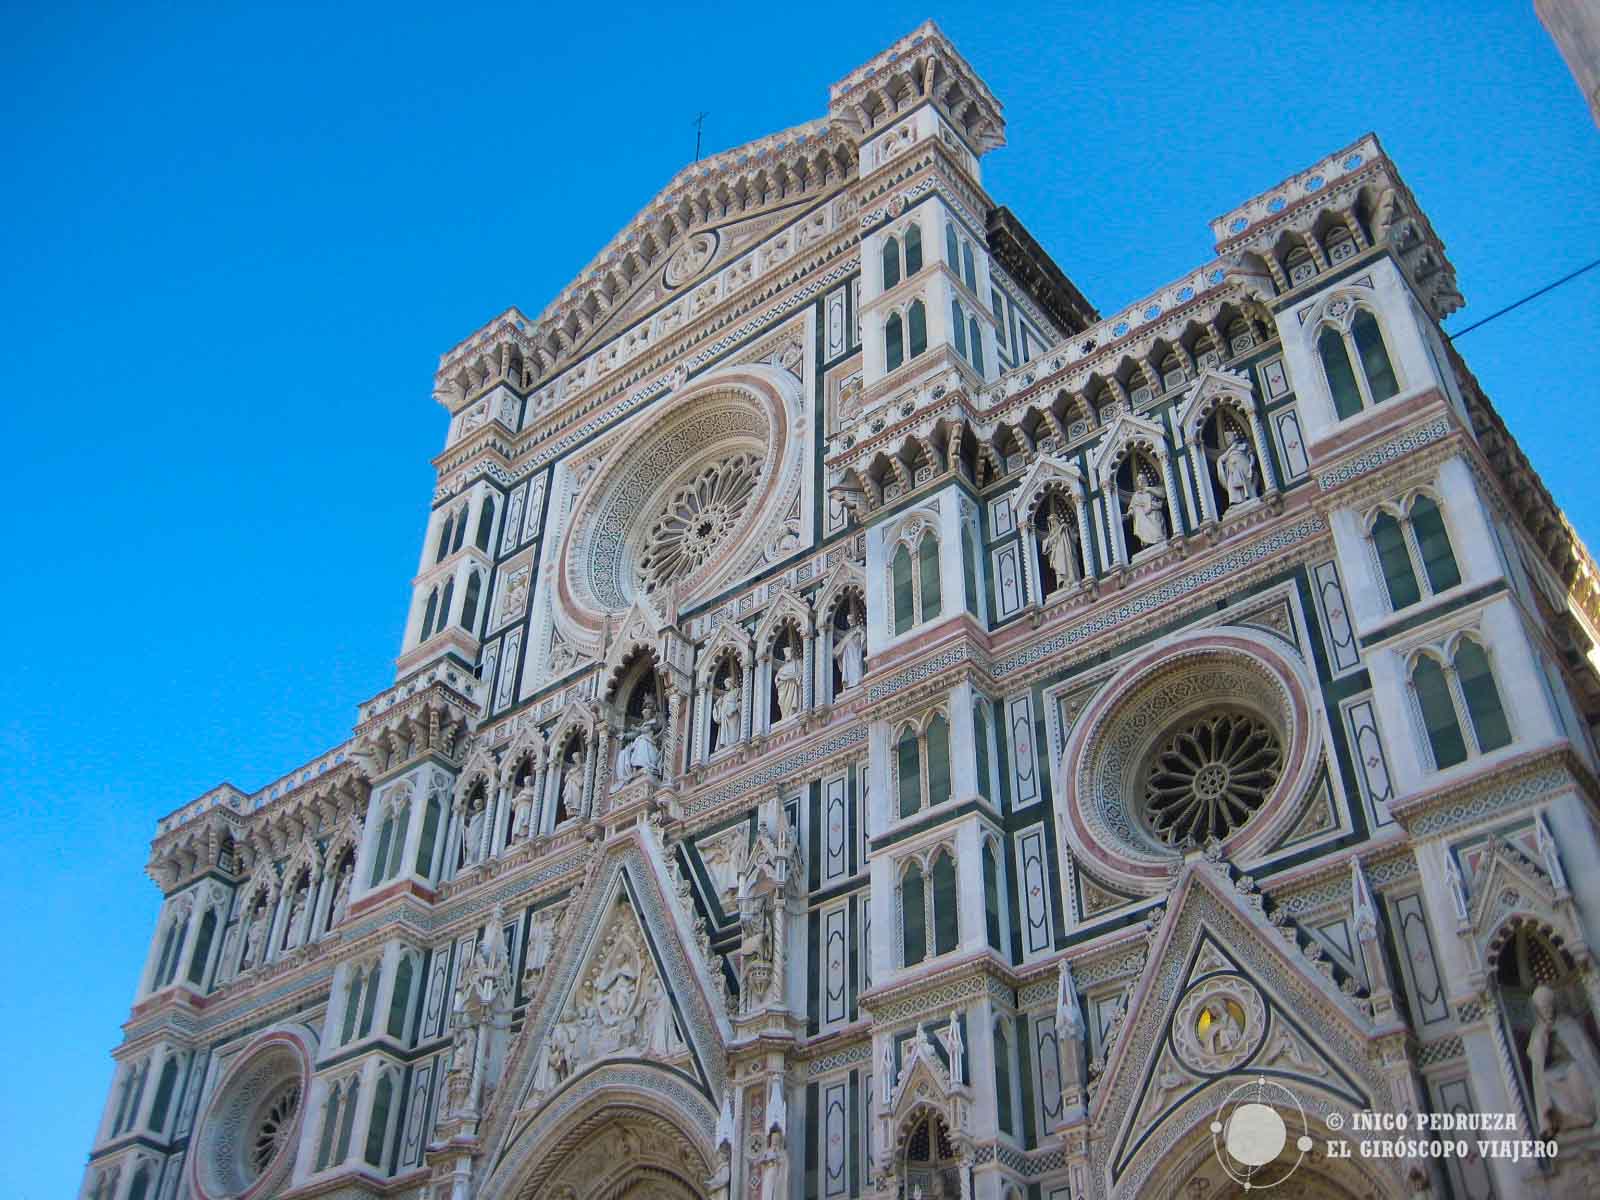 Il Duomo de Florencia, la catedral de Santa María dei Fiore. ©Iñigo Pedrueza.